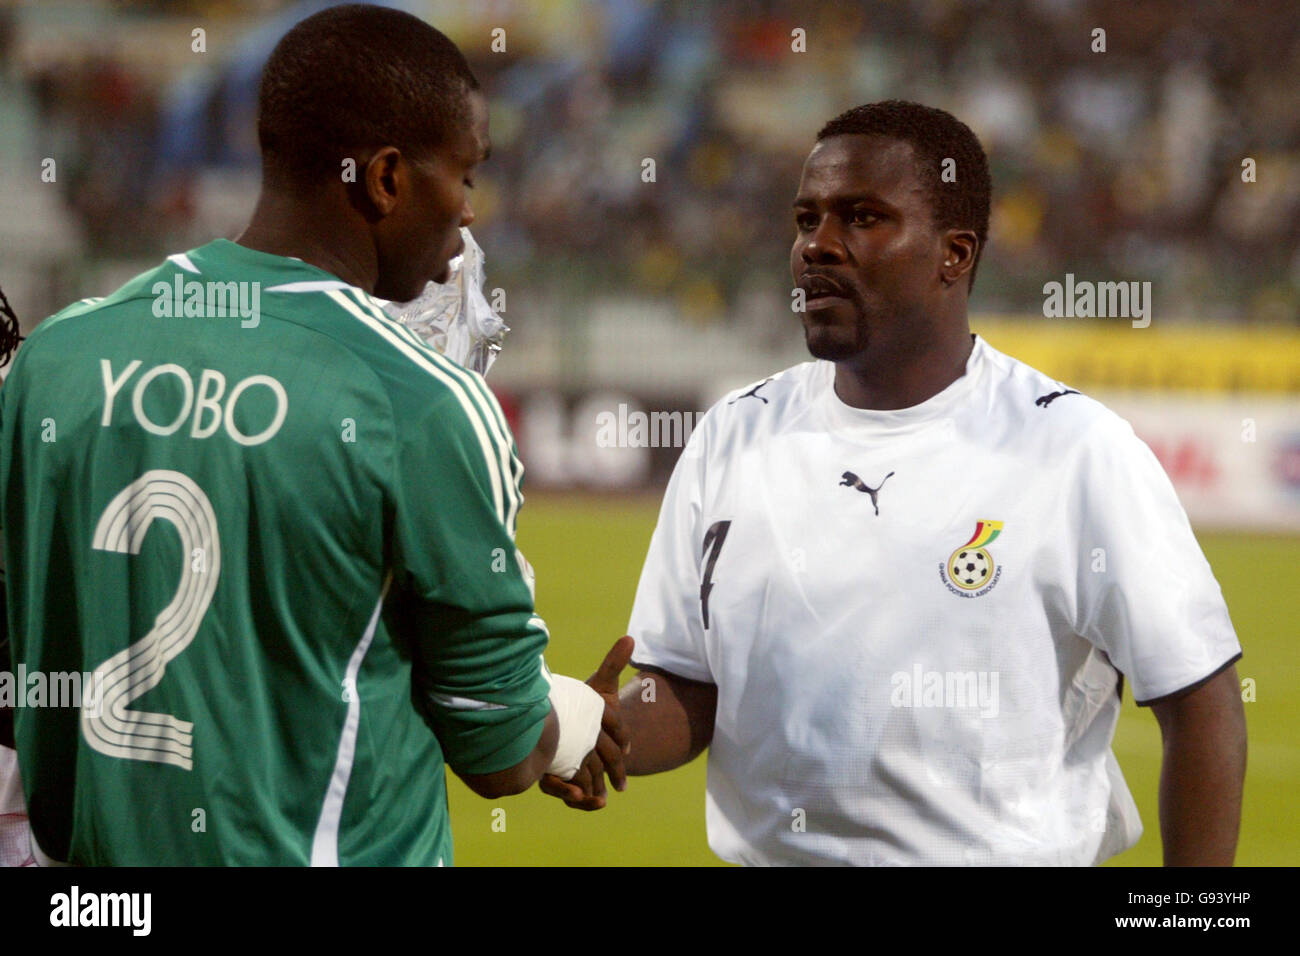 Nigeria's Joseph Yobo and Ghana's Samuel Osei Kuffour shake hands prior to kick off Stock Photo